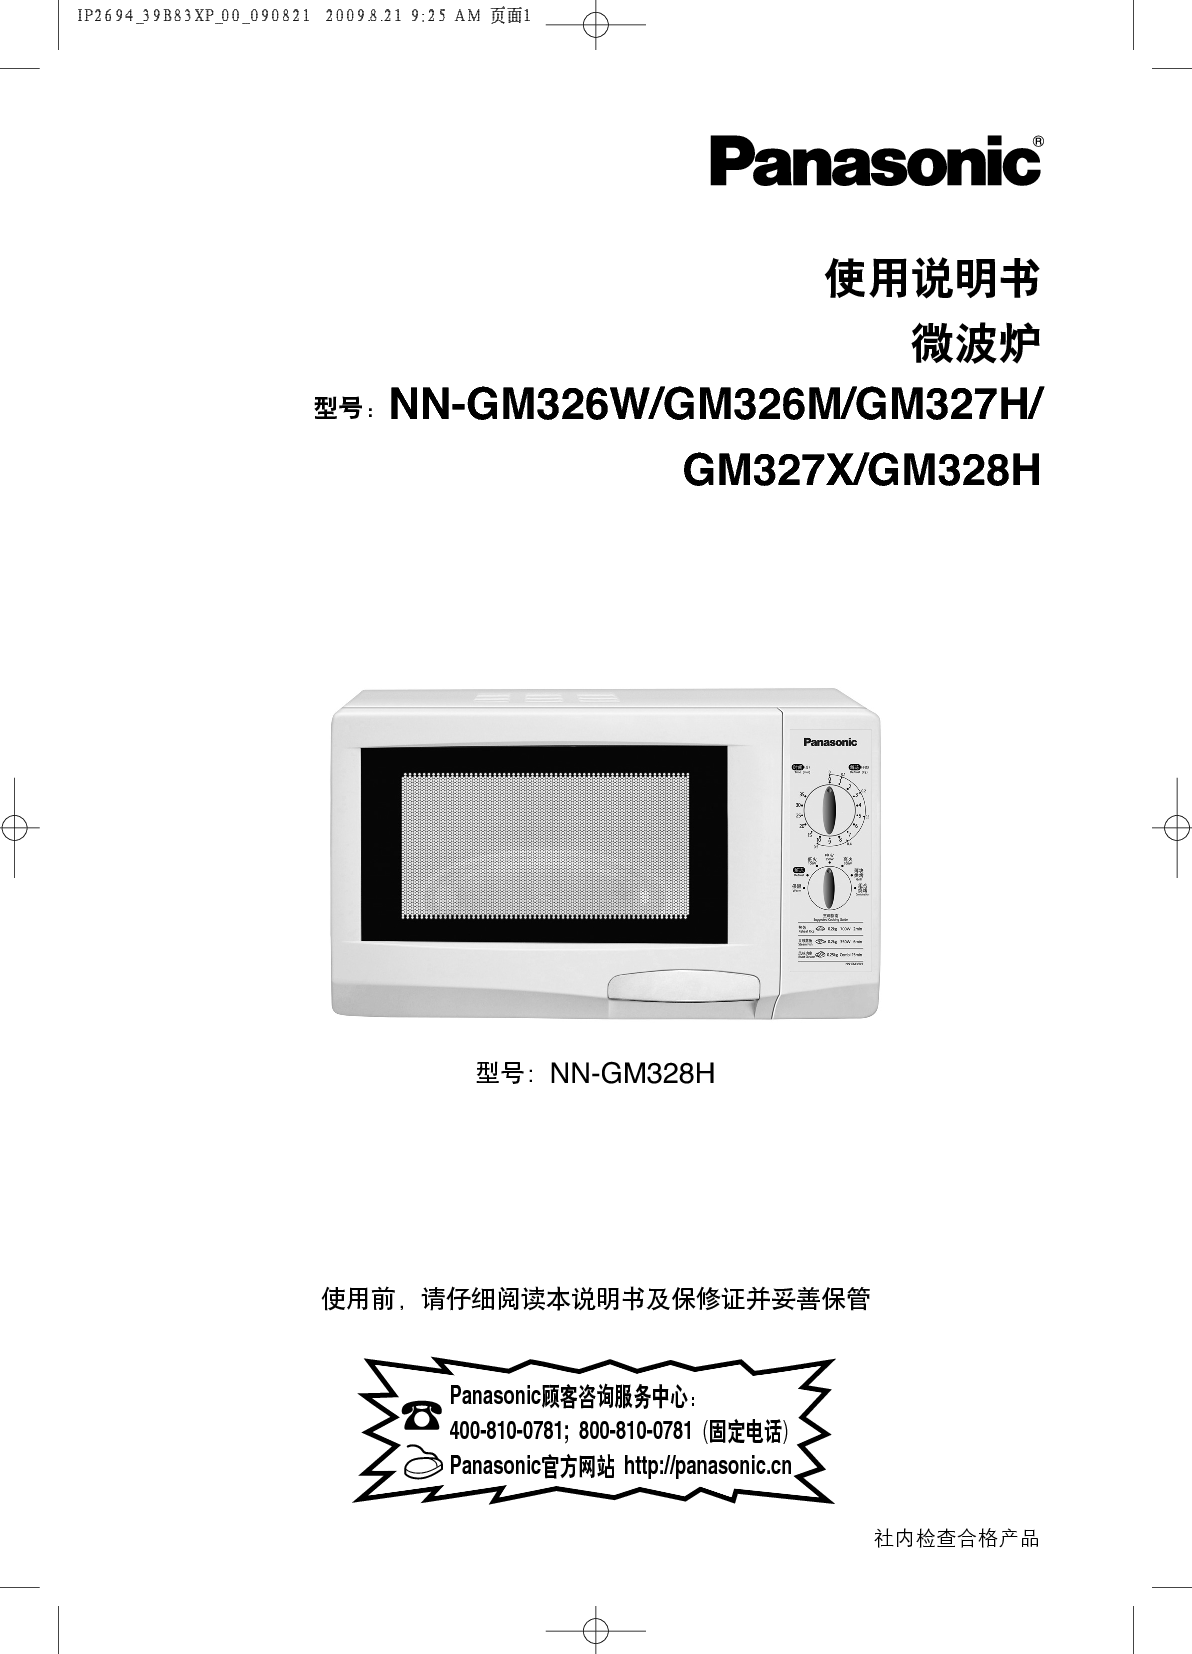 松下 Panasonic NN-GM326M 说明书 封面